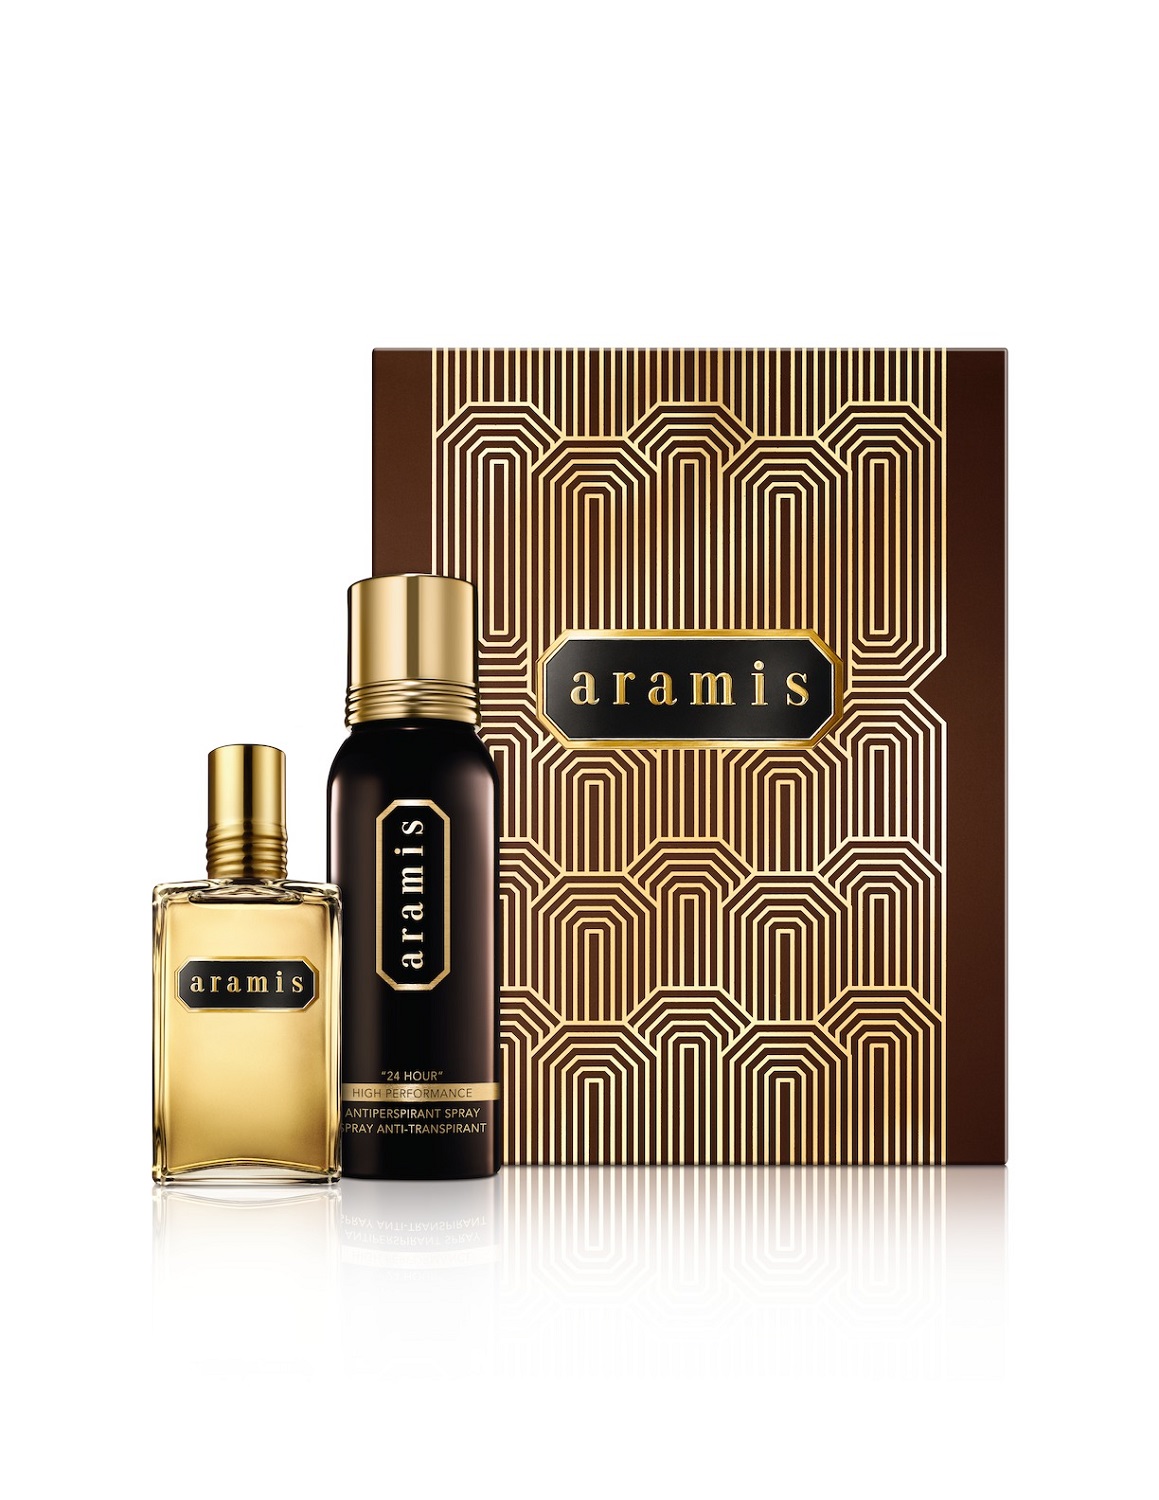 Parfümerie Palz | Aramis Holiday Set | Rund um Wohlfühlen